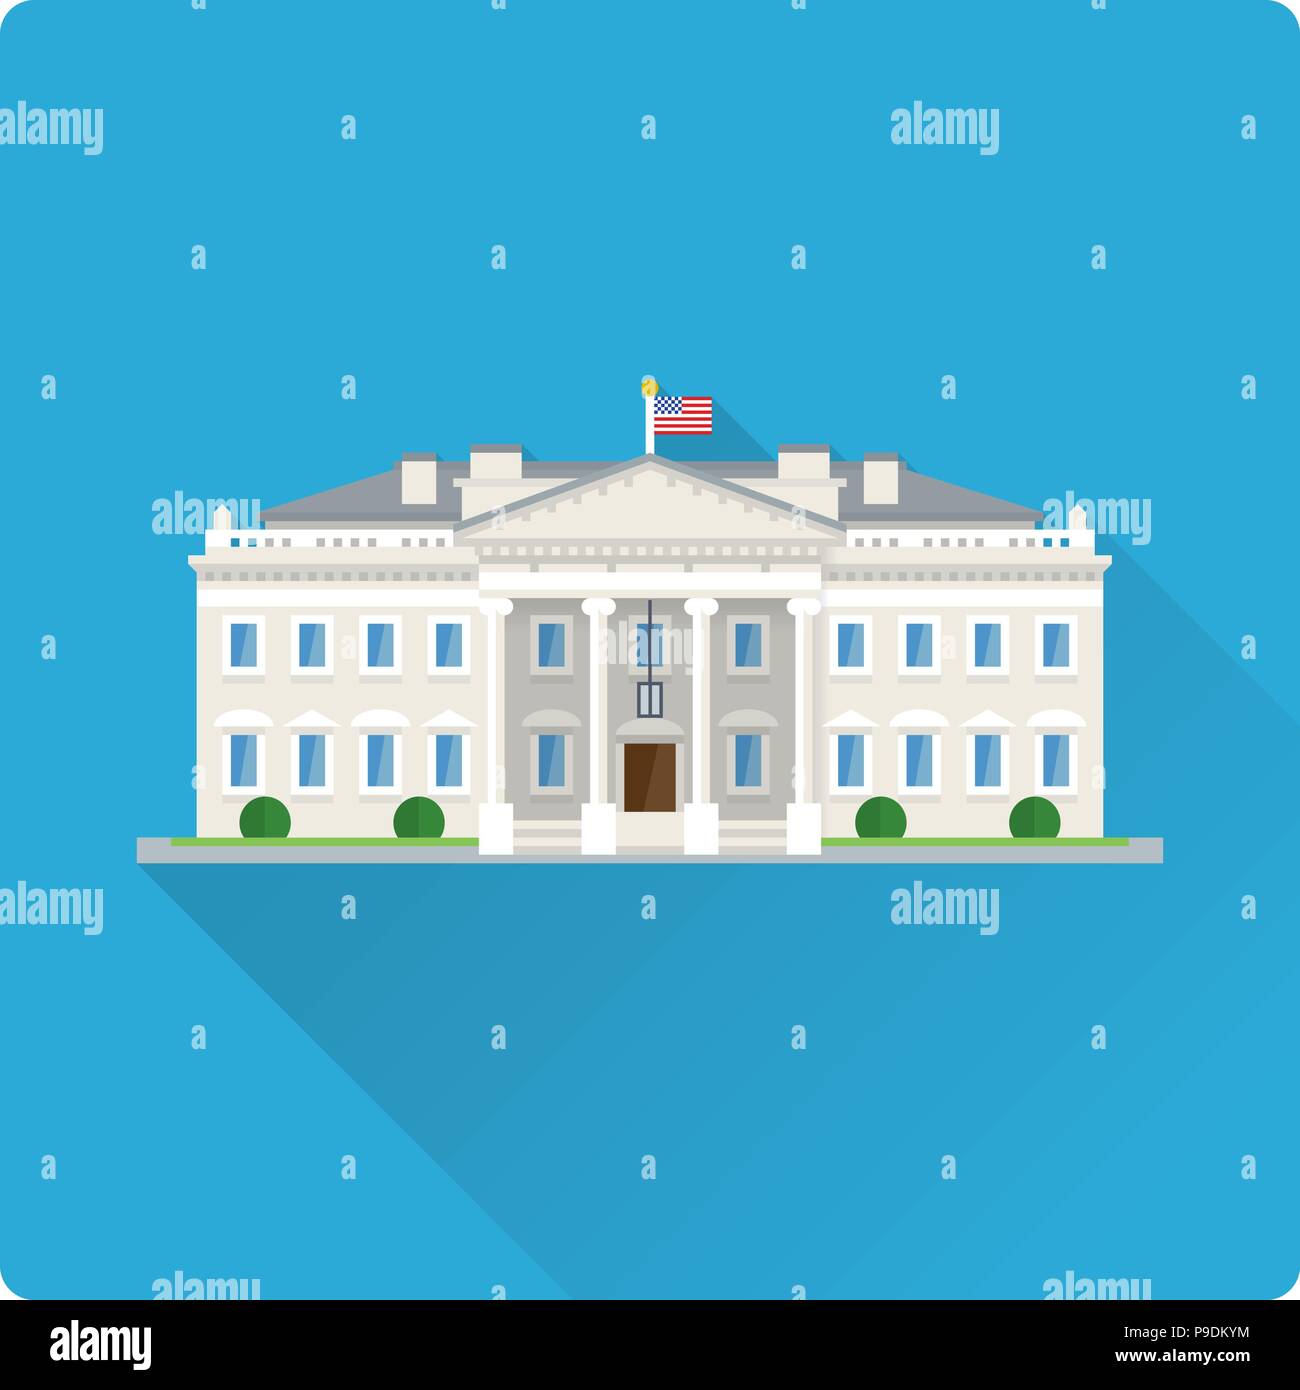 Modèle plat long shadow vector illustration de la Maison Blanche à Washington, DC Illustration de Vecteur